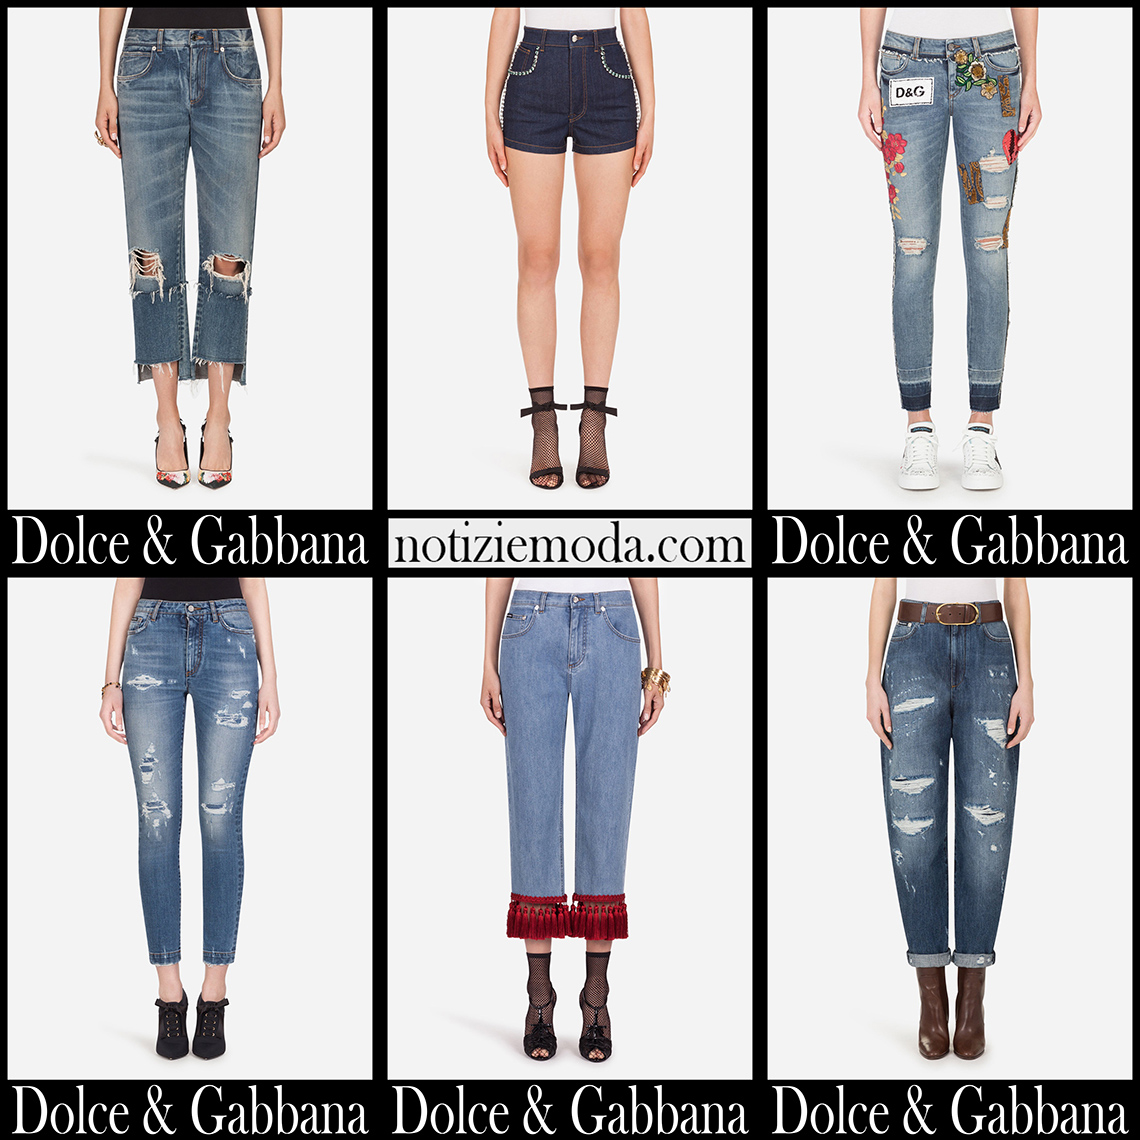 Nuovi arrivi jeans Dolce Gabbana 2021 autunno inverno donna